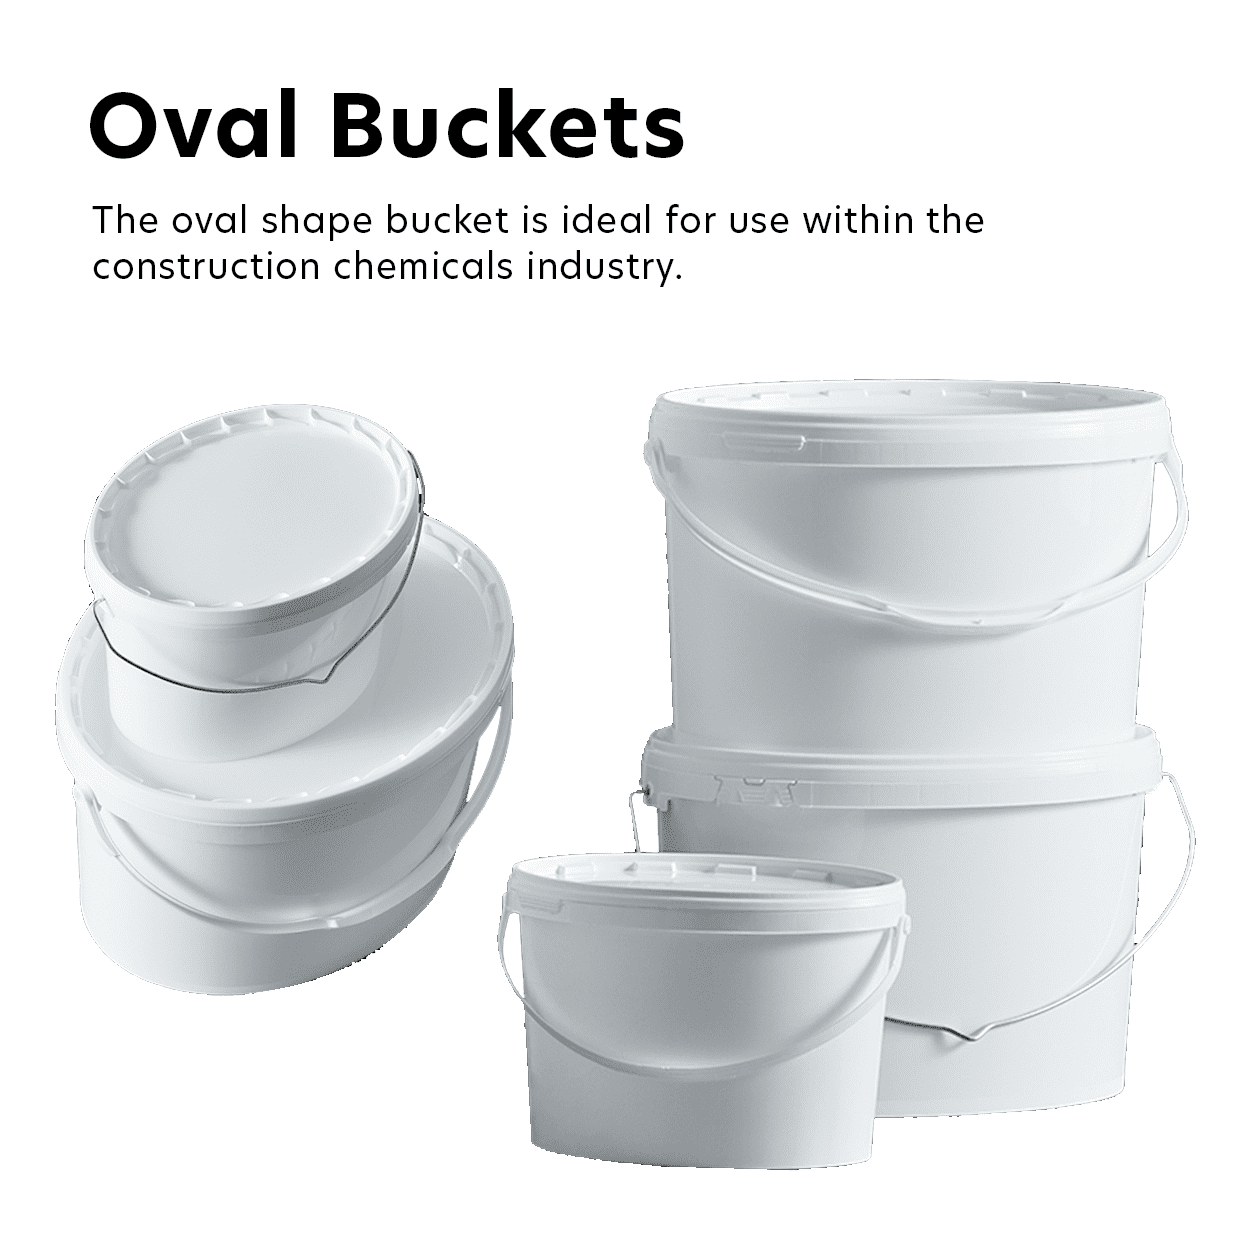 Oval Buckets